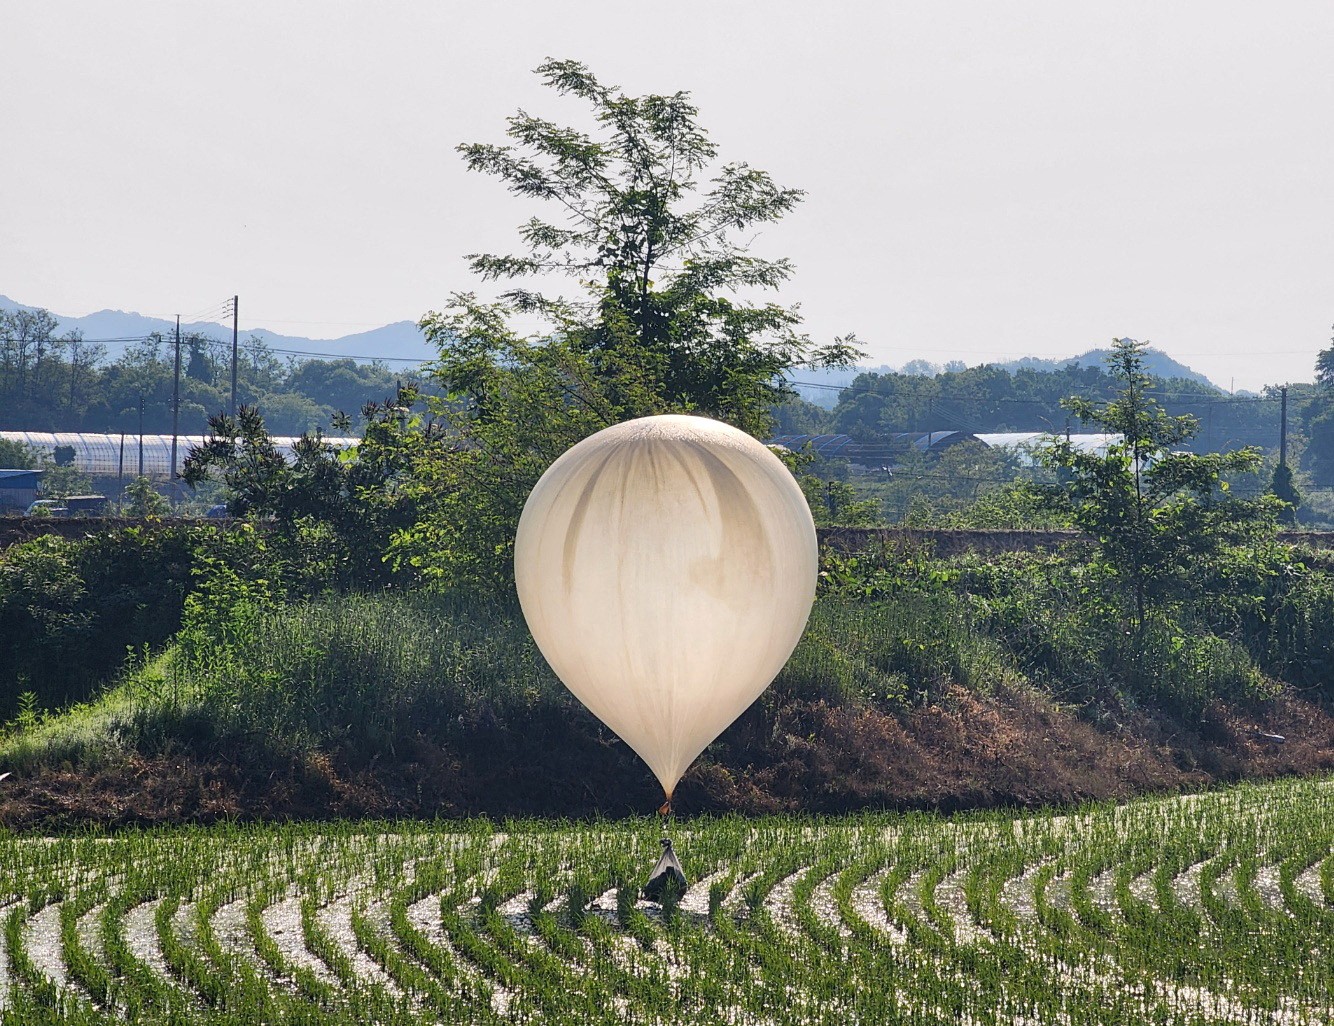 Coreia do Norte envia dezenas de balões com lixo e fezes para a Coreia do Sul, dizem militares